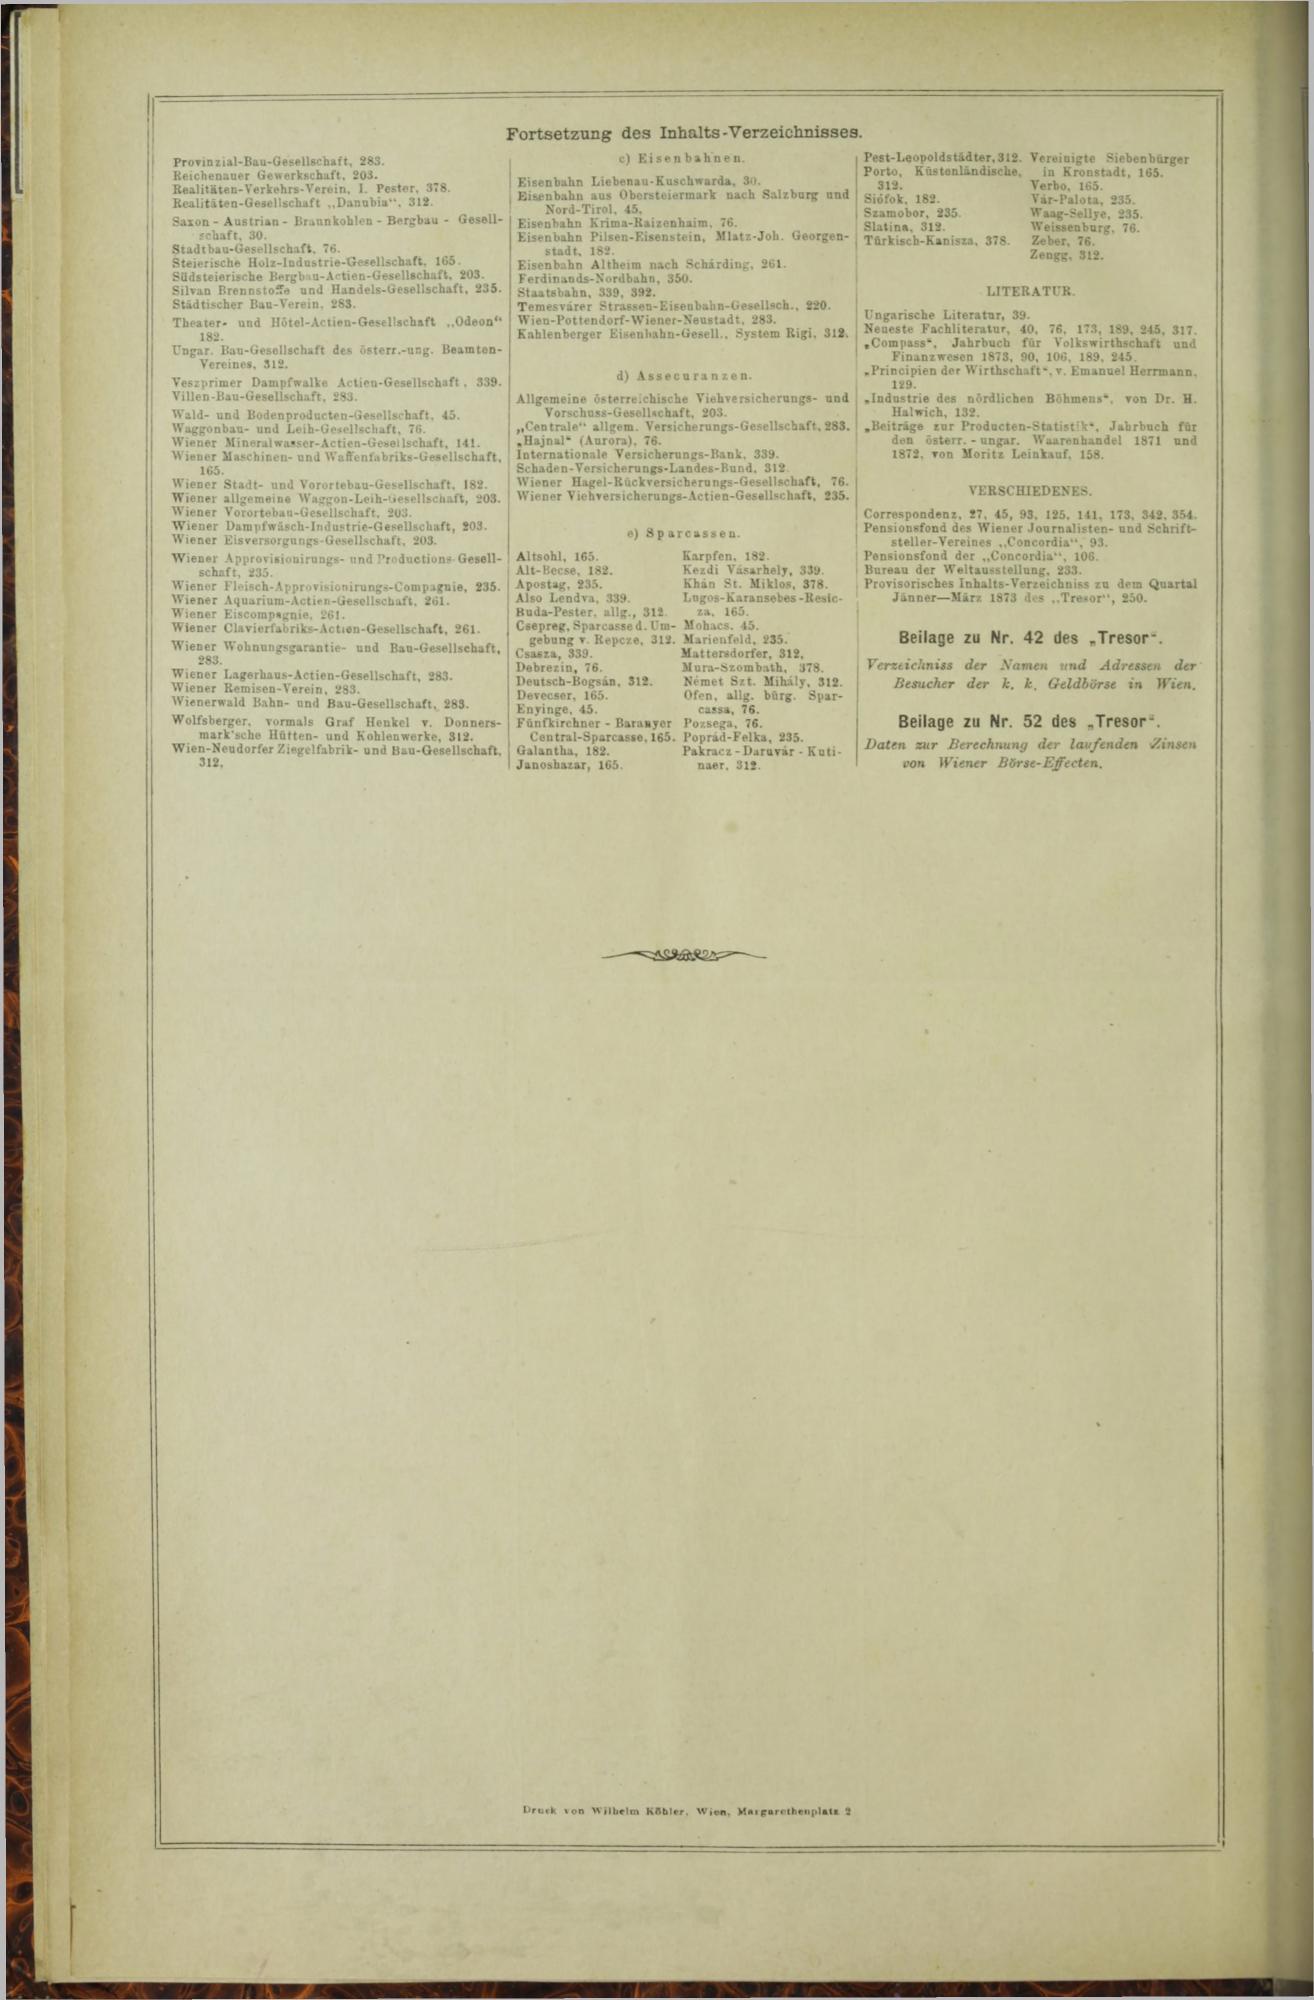 Der Tresor 21.01.1873 - Seite 22